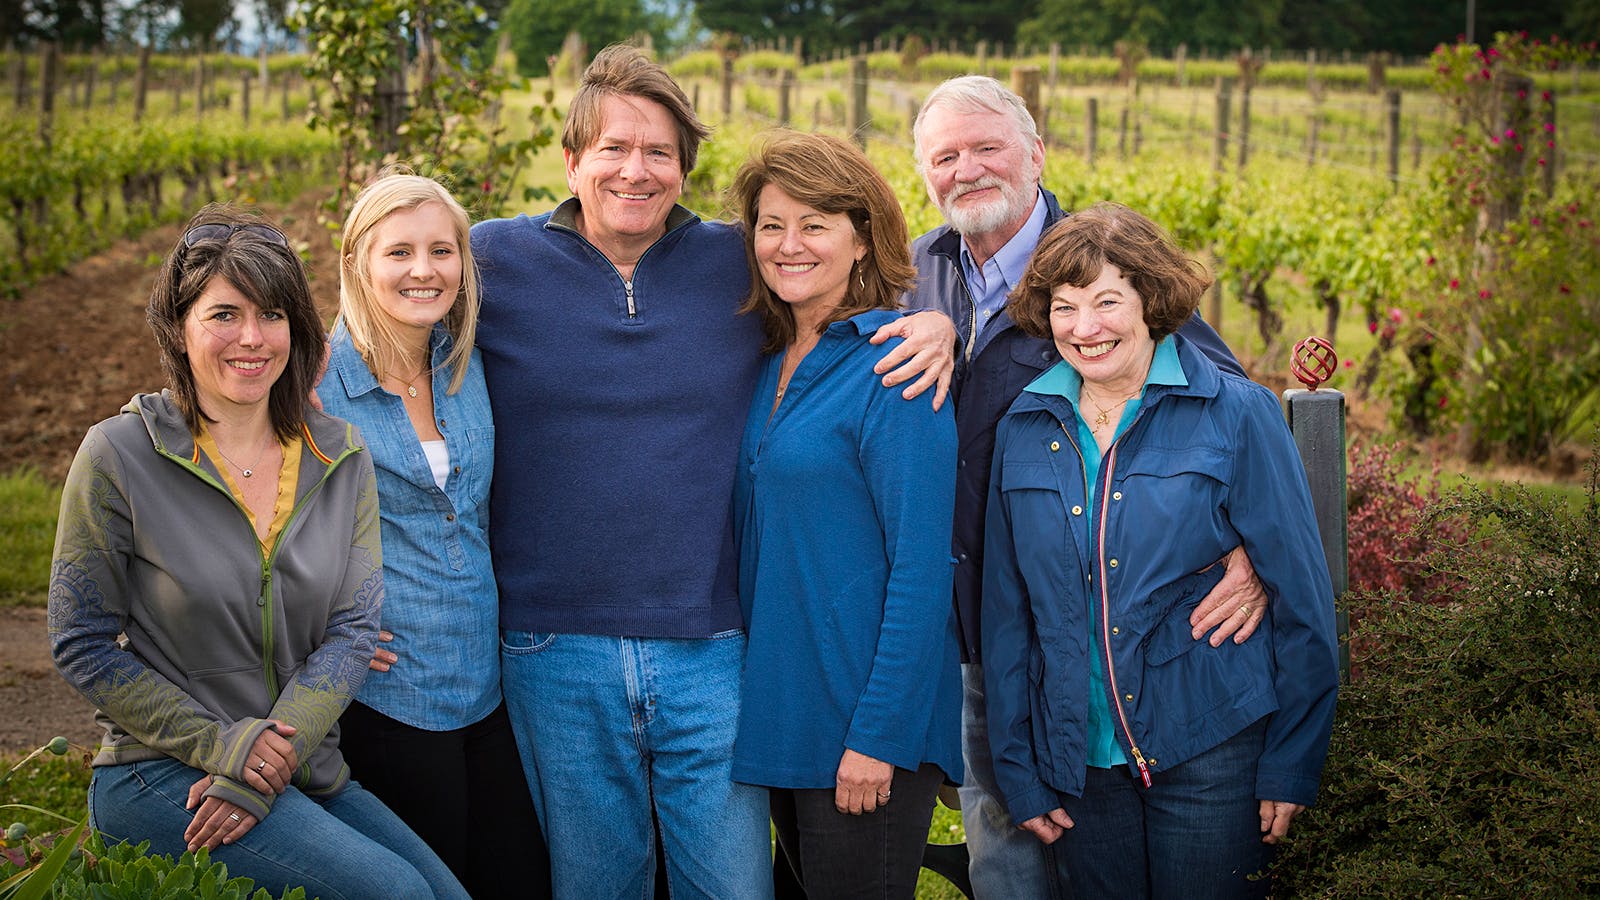 Focused on Oregon's Great Wine Terroirs